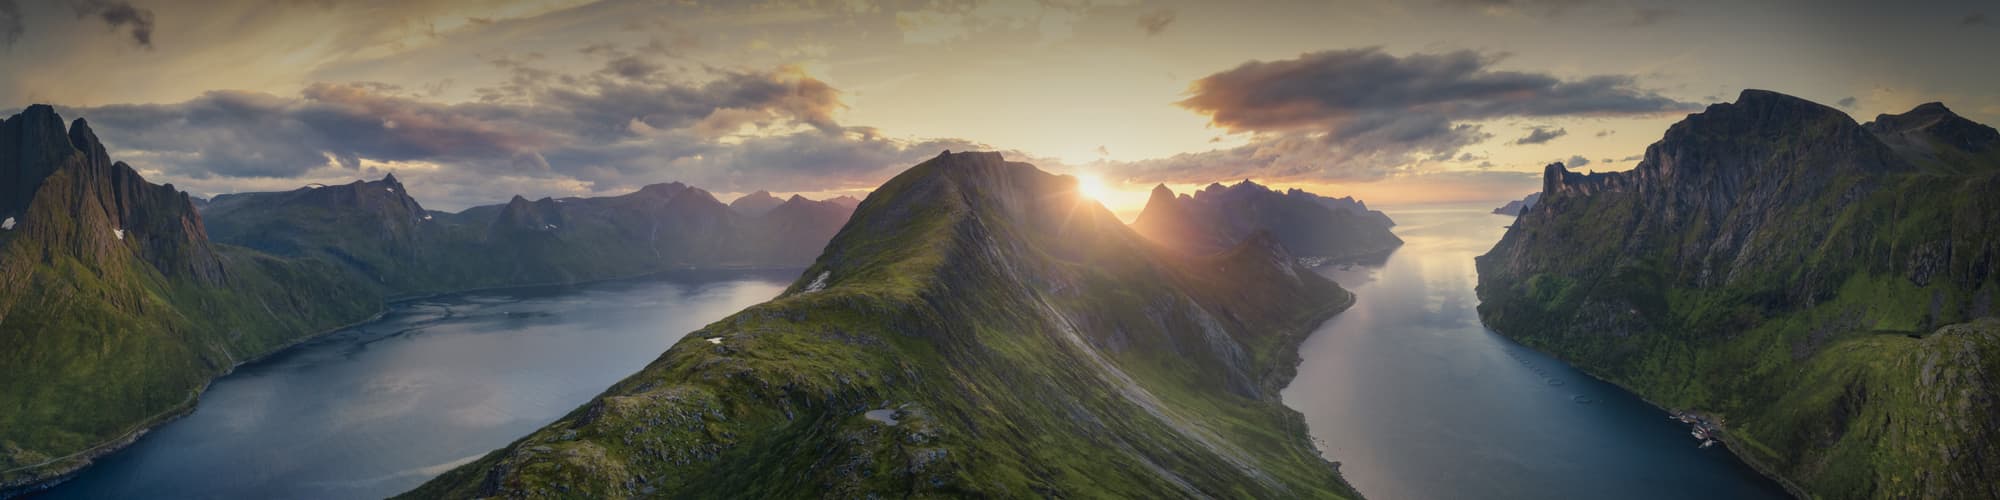 Voyage sur mesure Norvège © sivivolk